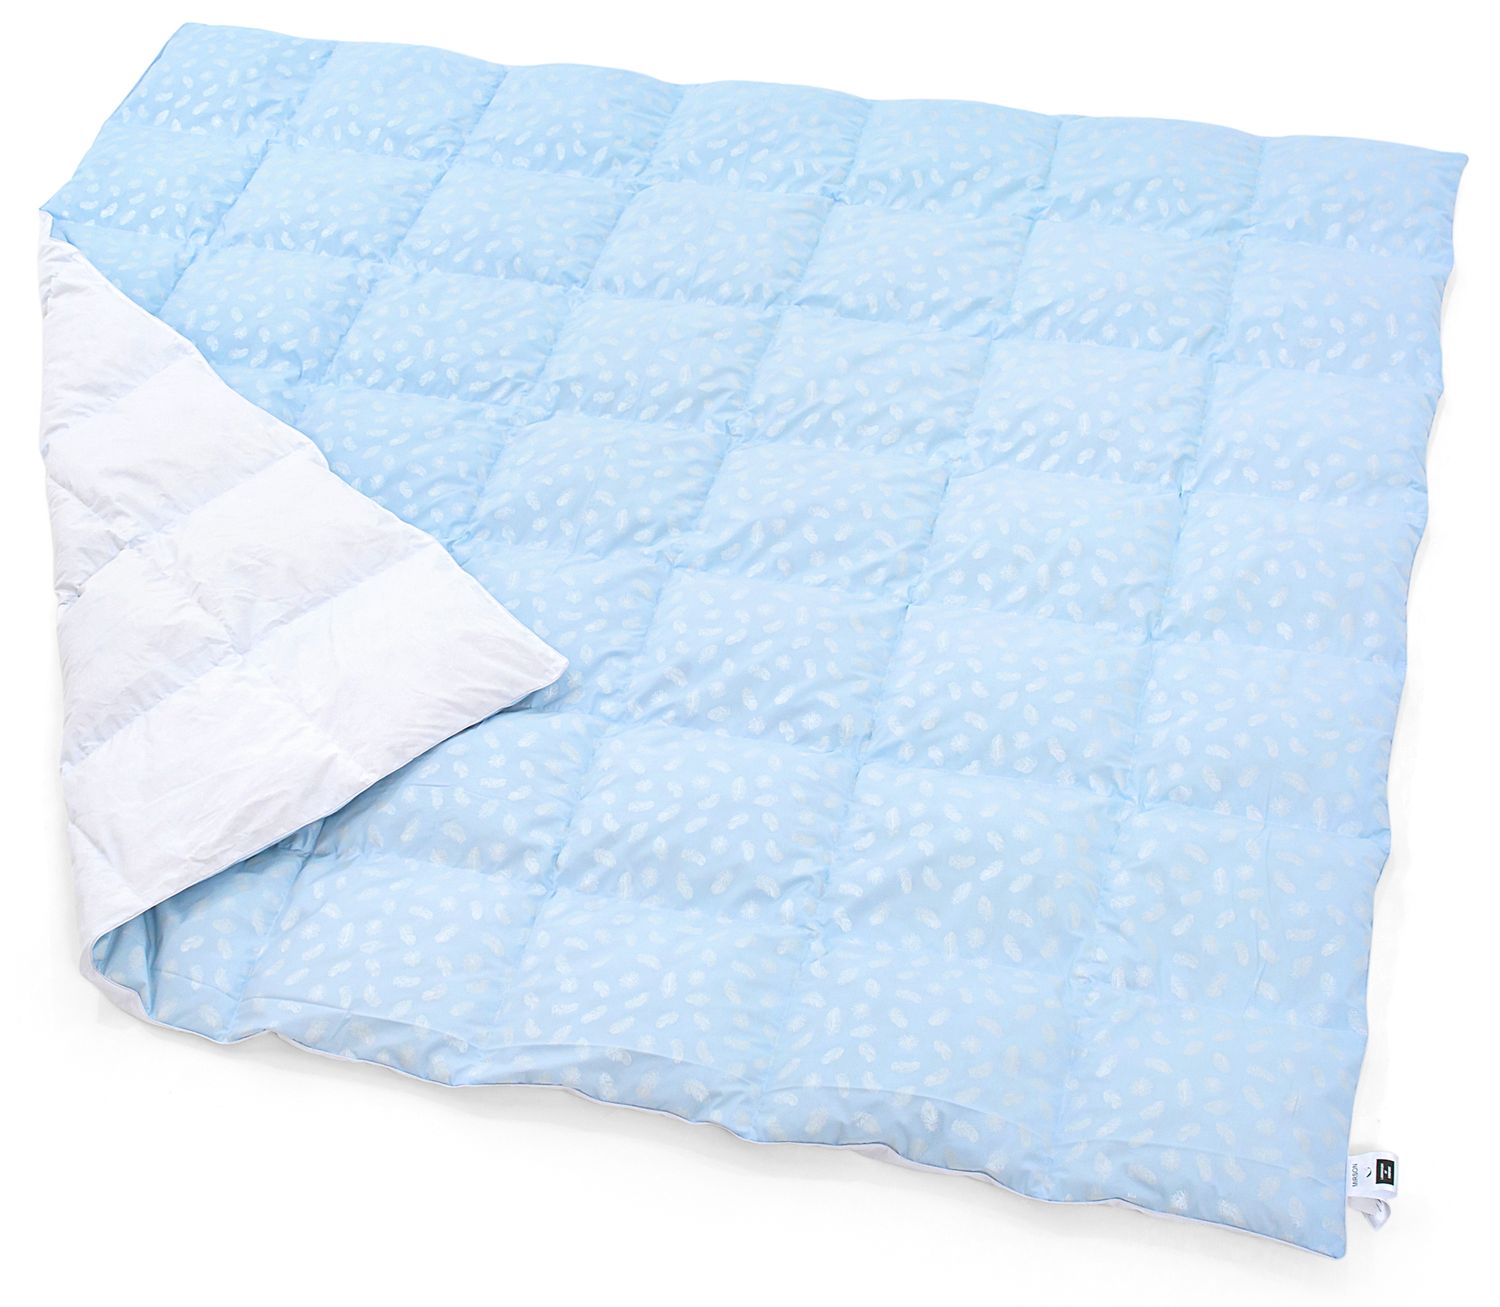 Одеяло пуховое MirSon Karmen №1855 Bio-Blue, 90% пух, полуторное, 215x155, голубое (2200003014259) - фото 2